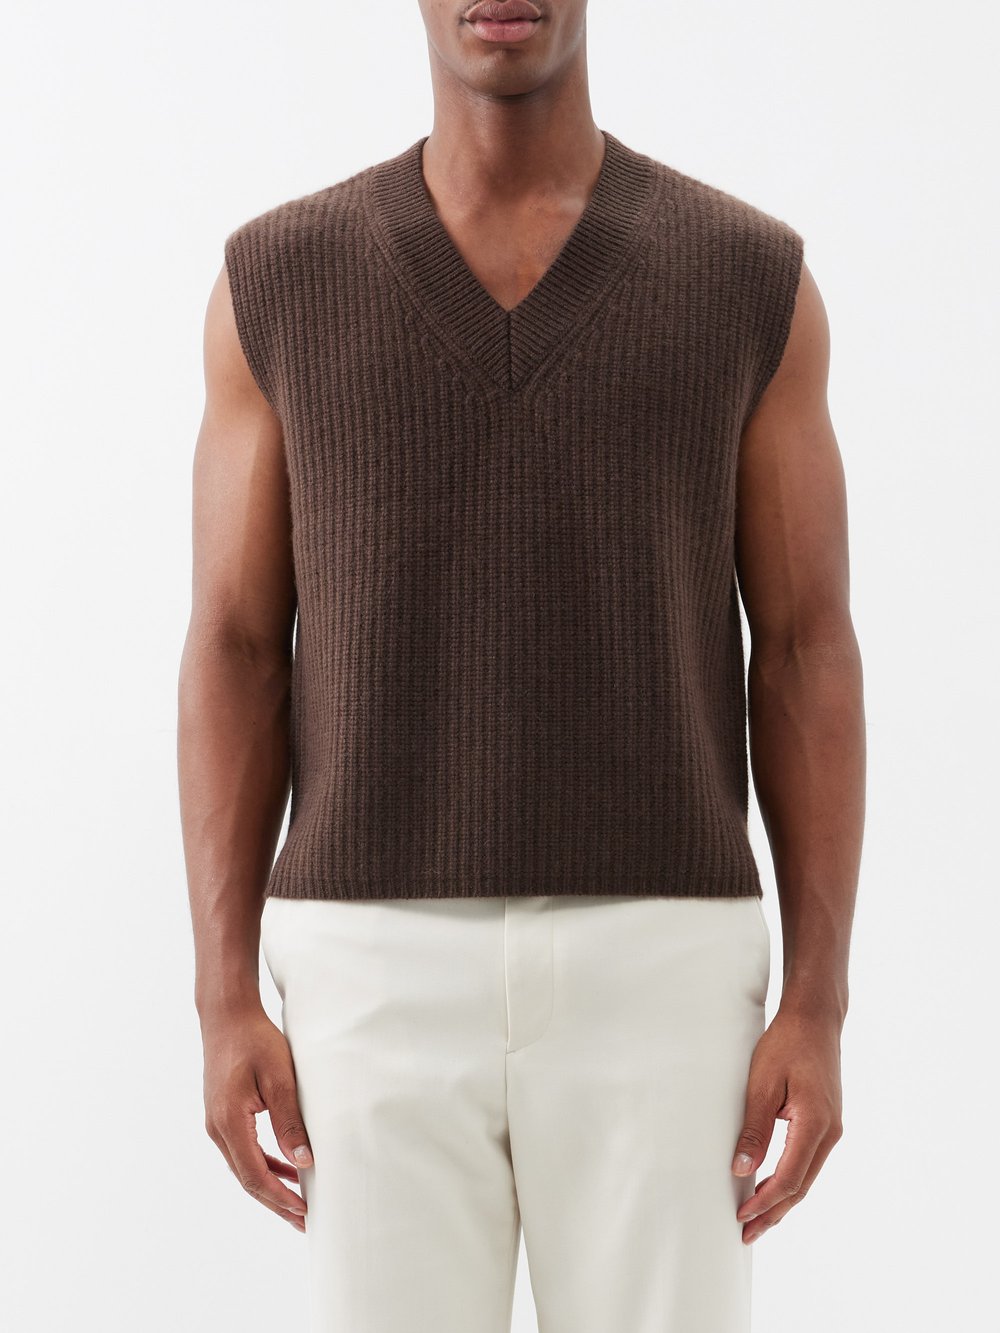 Кашемировый свитер-жилет mr southbank Arch4, коричневый цена и фото